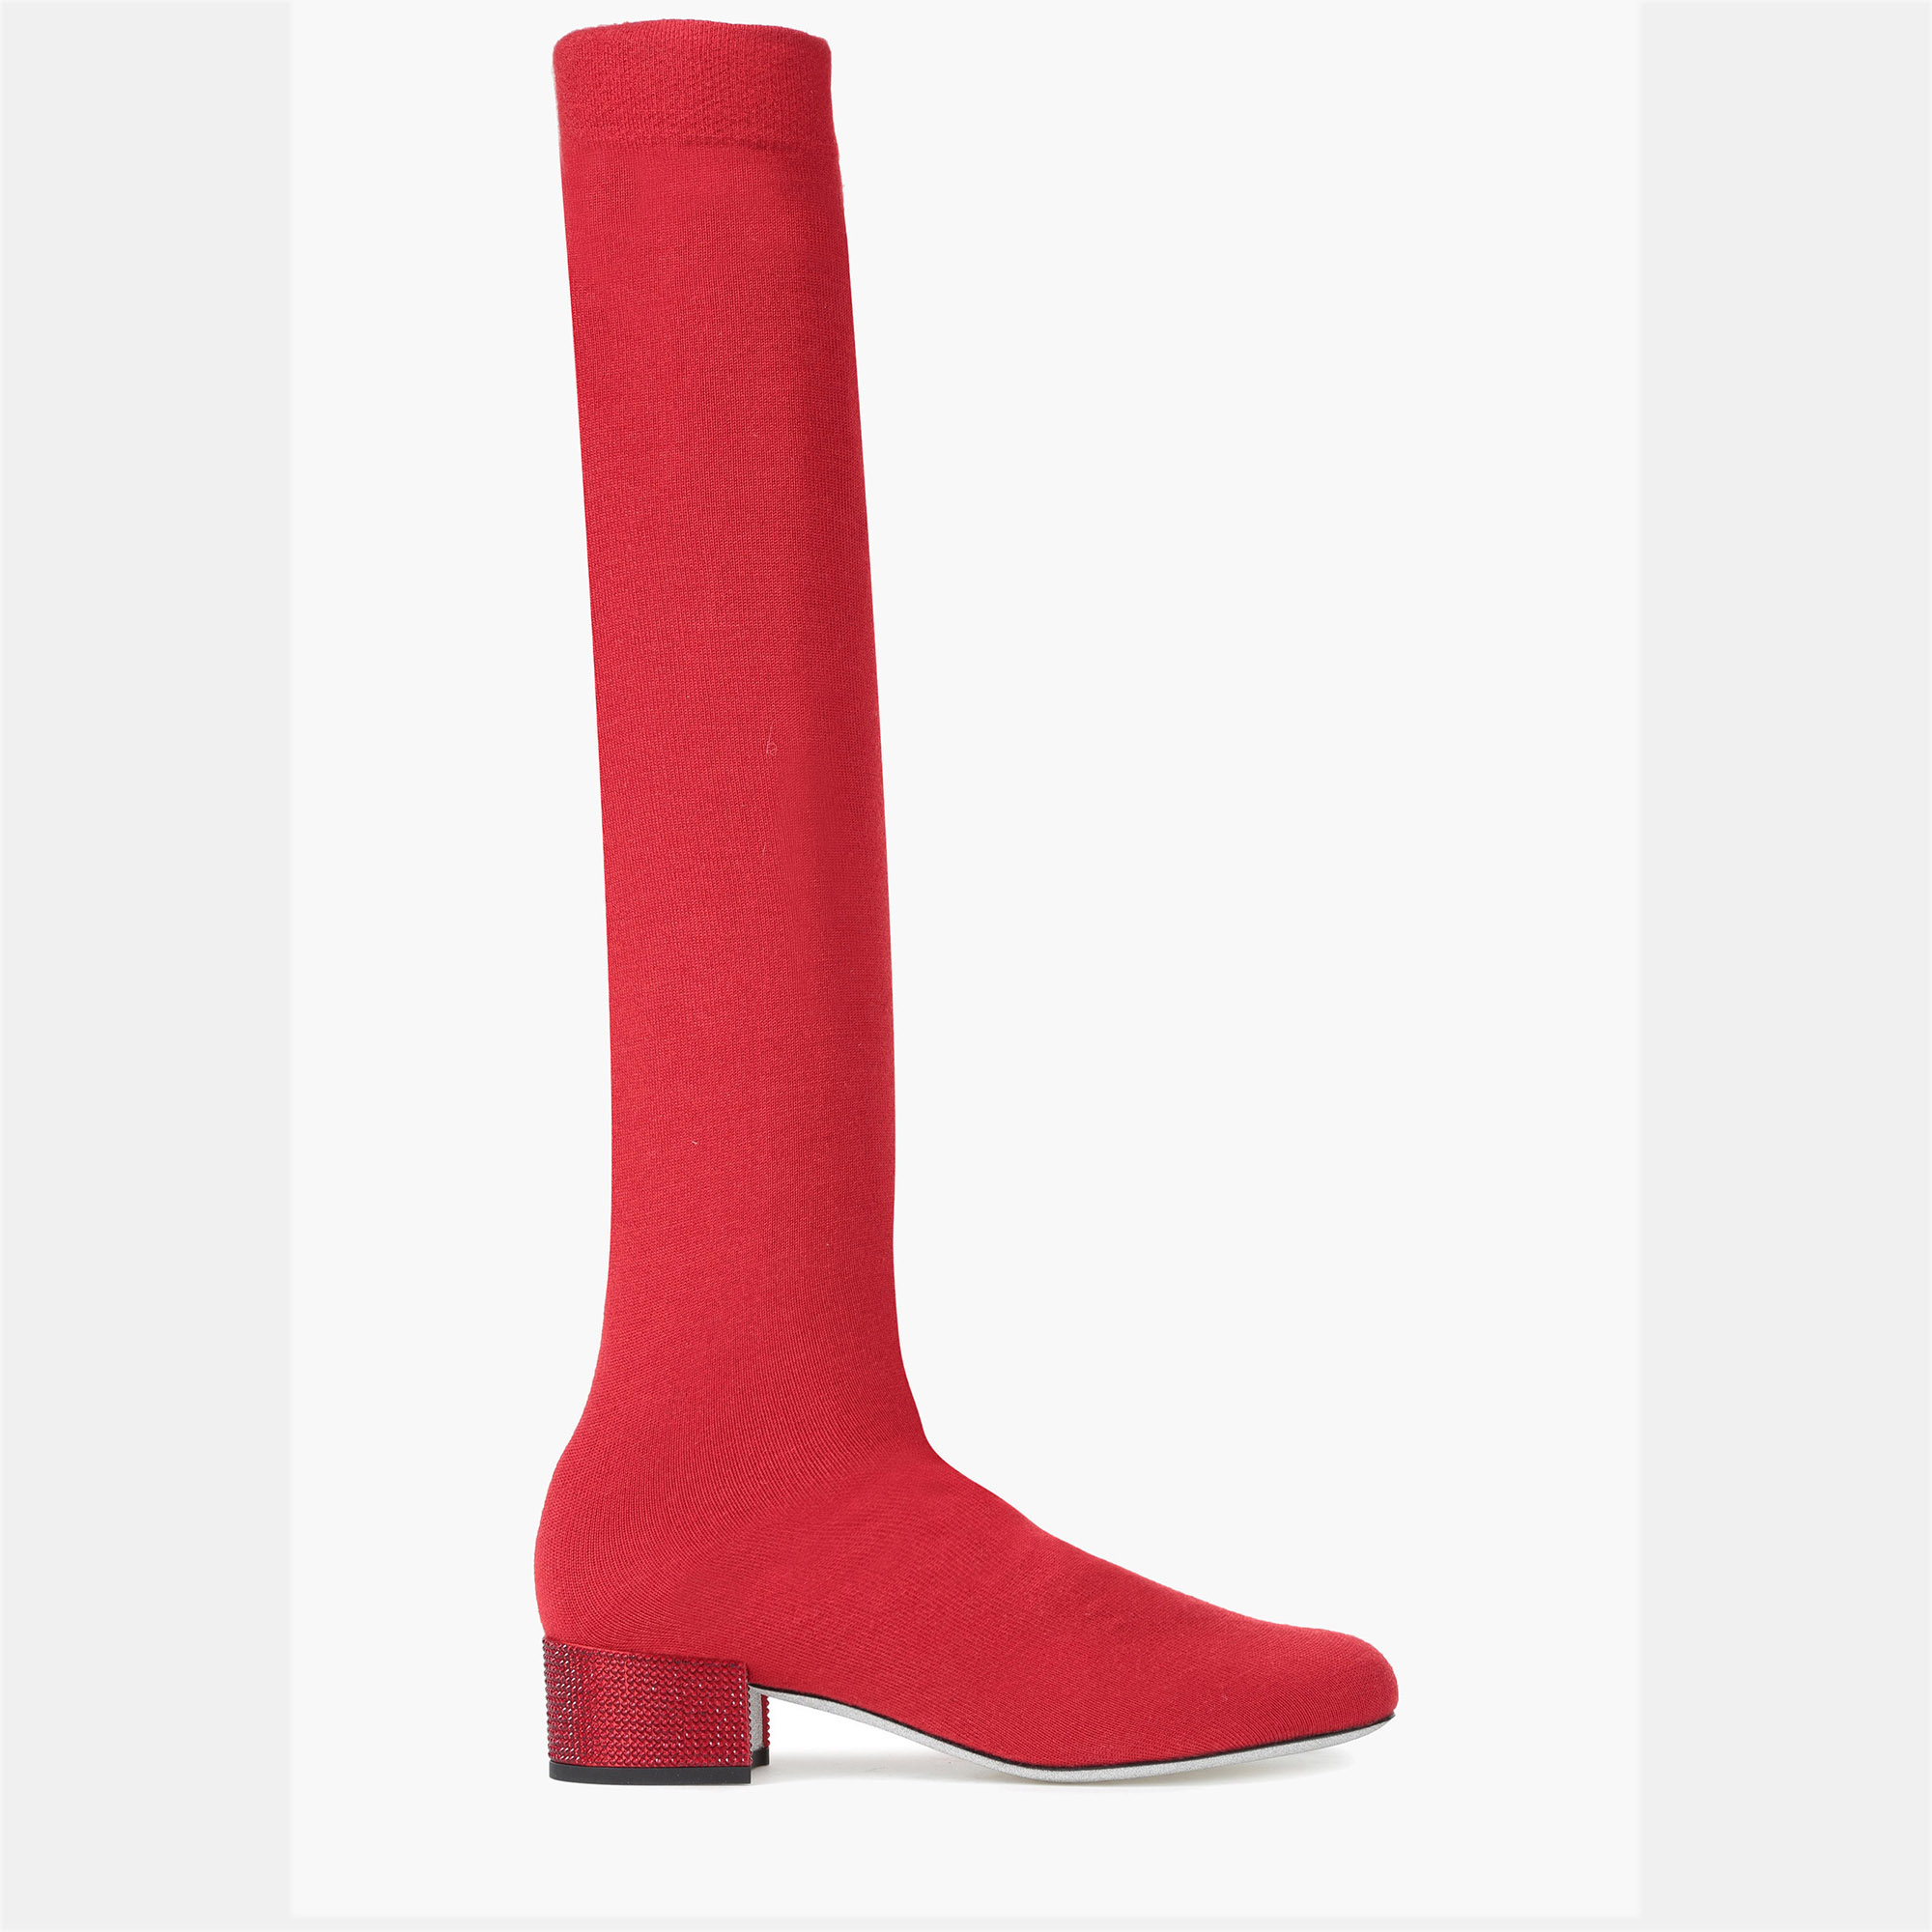 Rene caovilla cashmere tall boots size 35